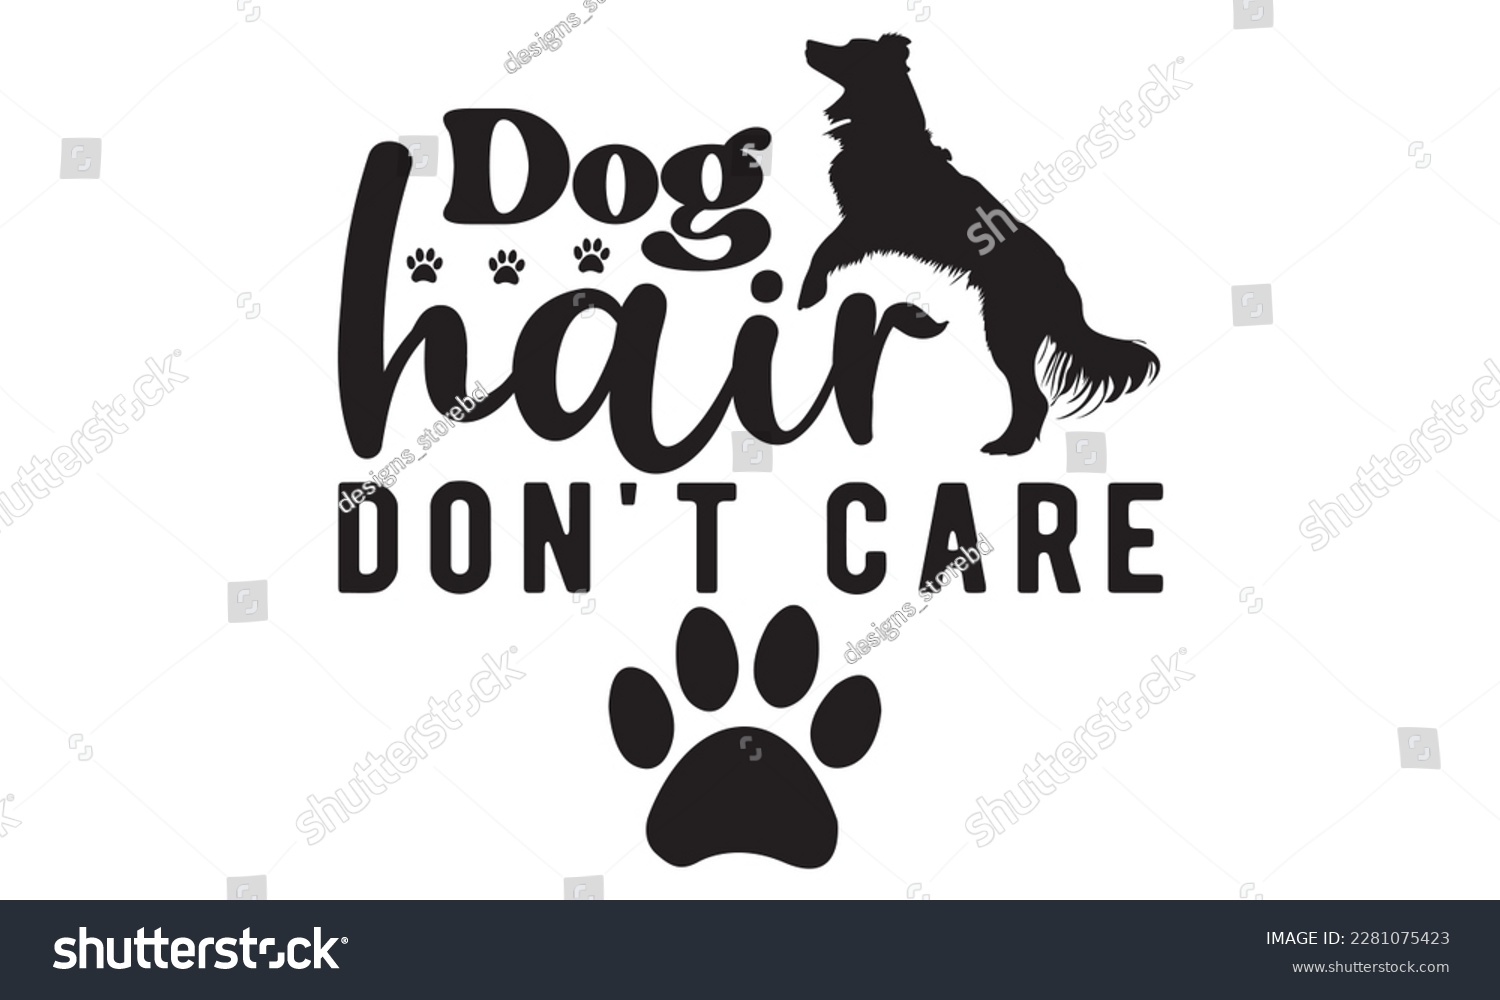 SVG of Dog hair don't care svg ,dog SVG Bundle, dog SVG design bundle and  t-shirt design, Funny Dog Quotes SVG Designs and cut files, fur mom, animal design, animal lover svg